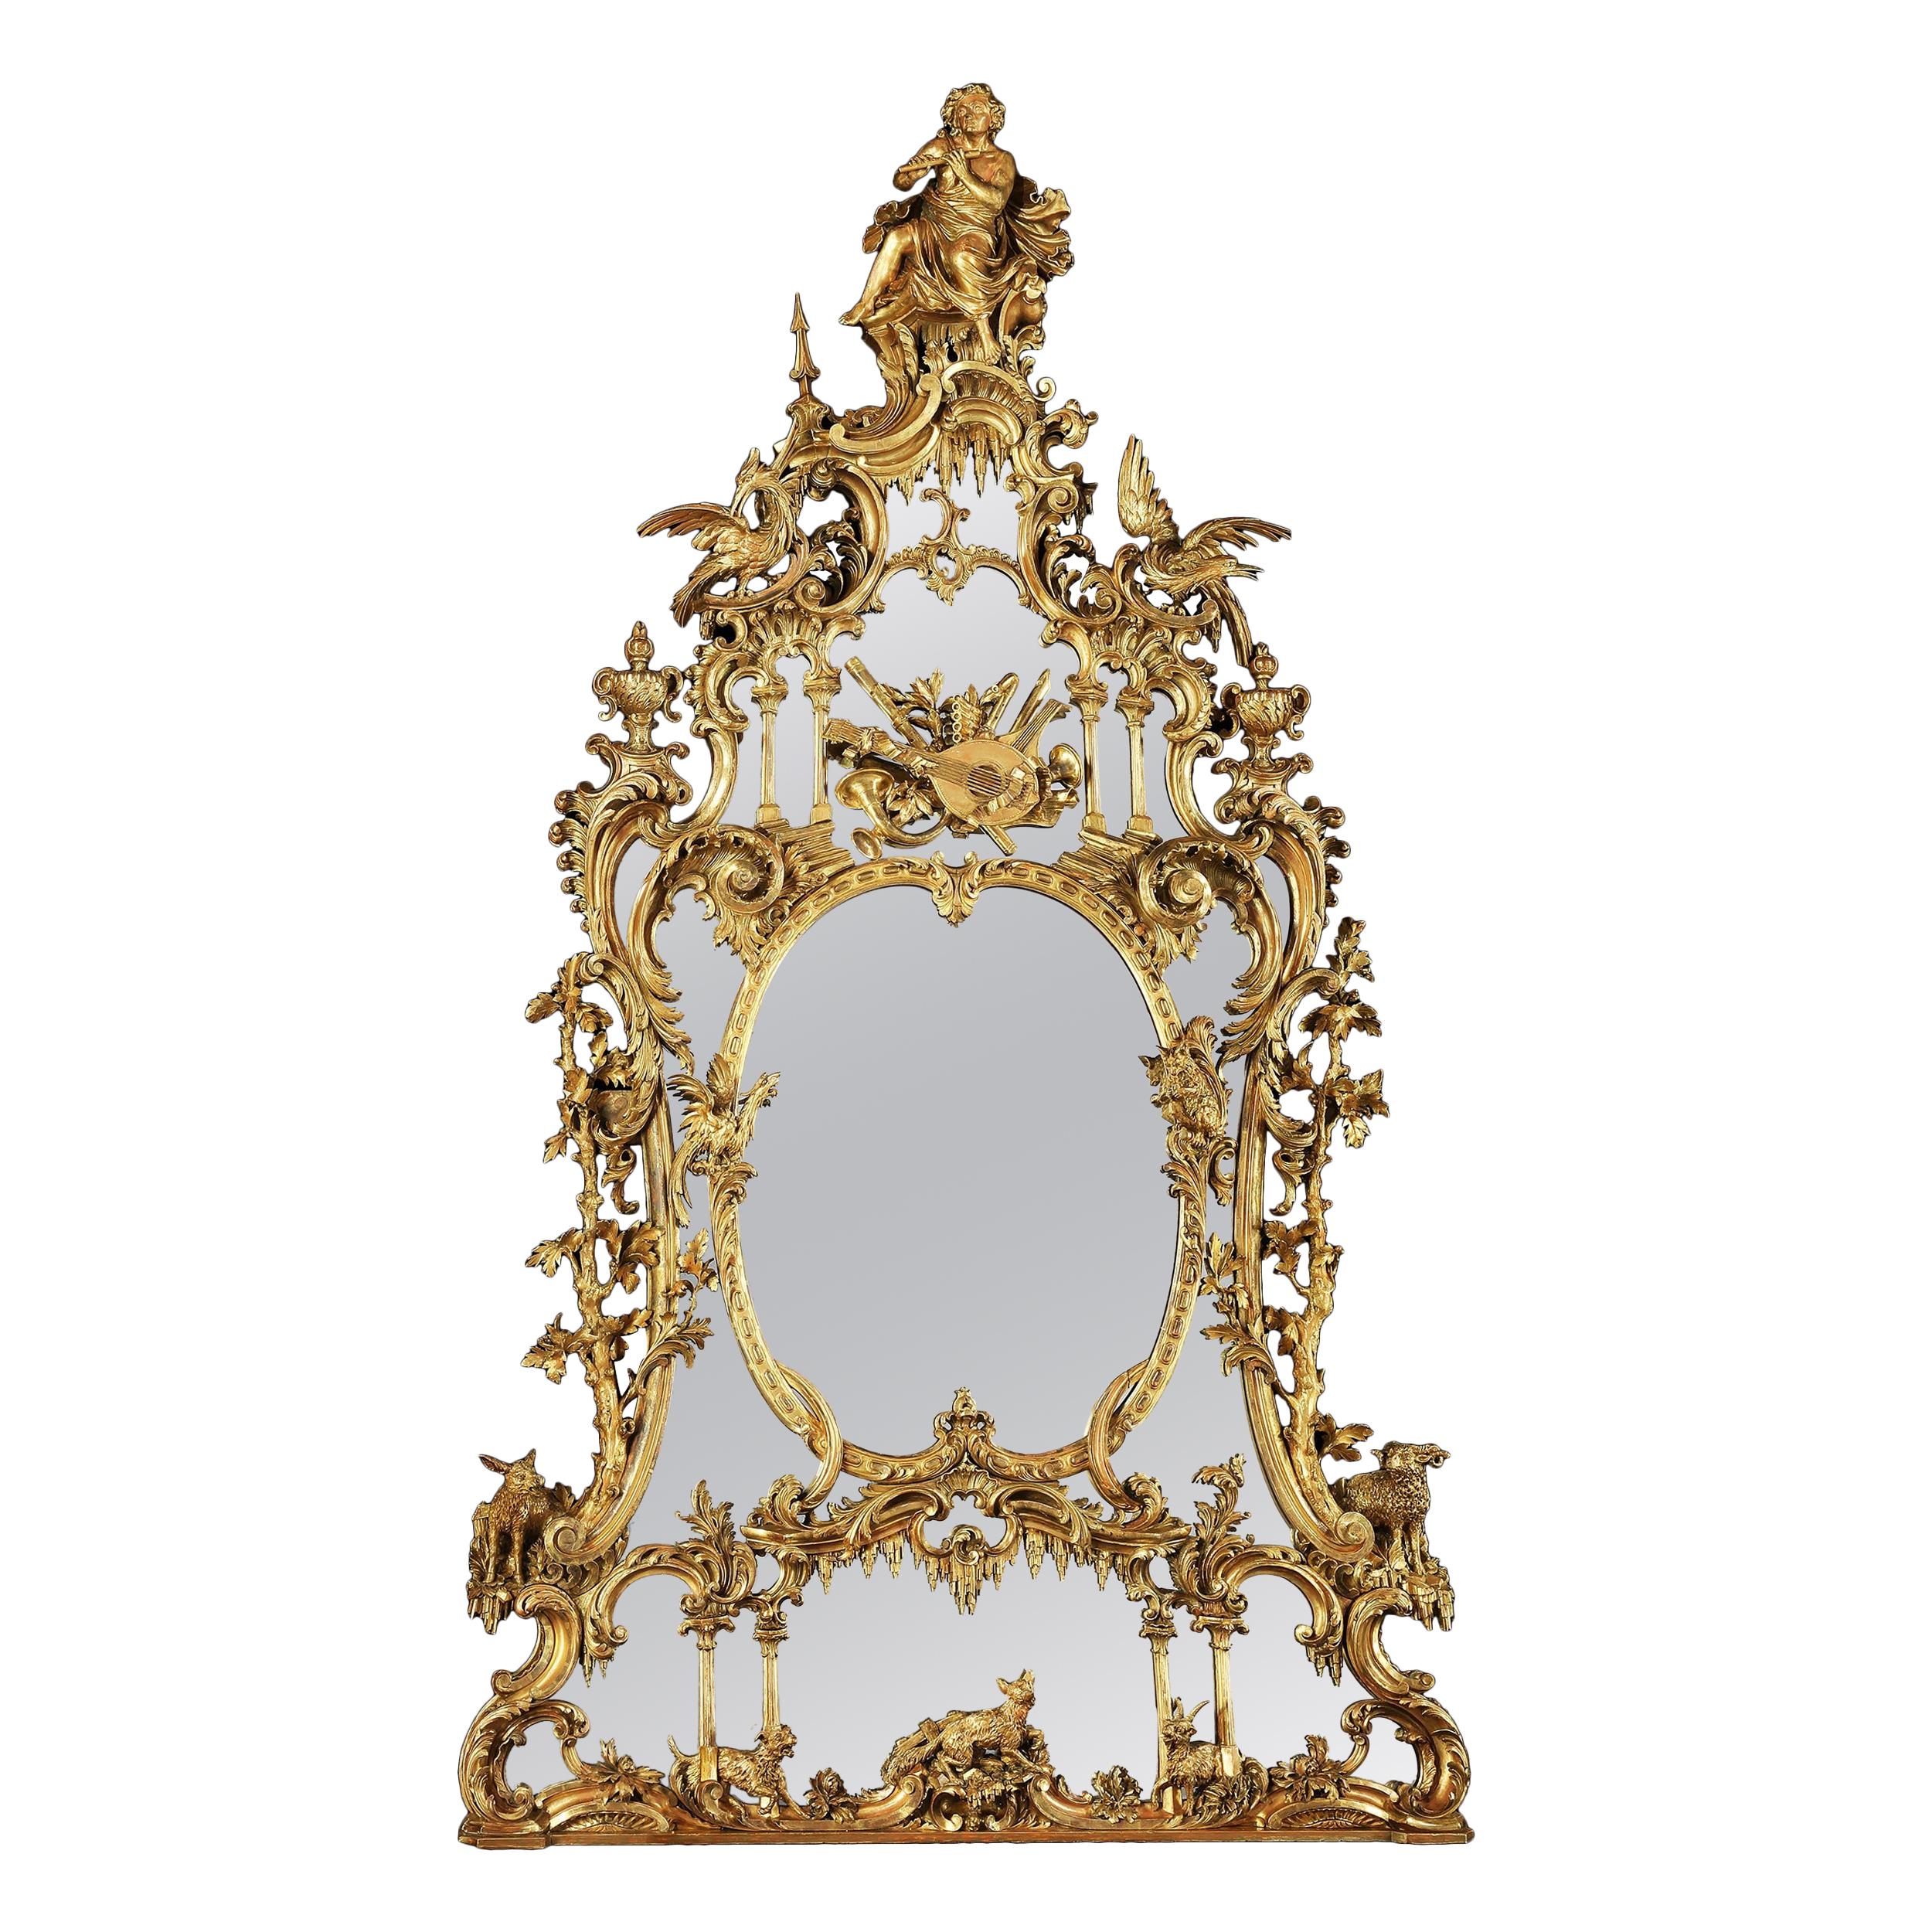 Geschnitzter Spiegel im Stil von George III des 19. Jahrhunderts nach einem Entwurf von Thomas Johnson